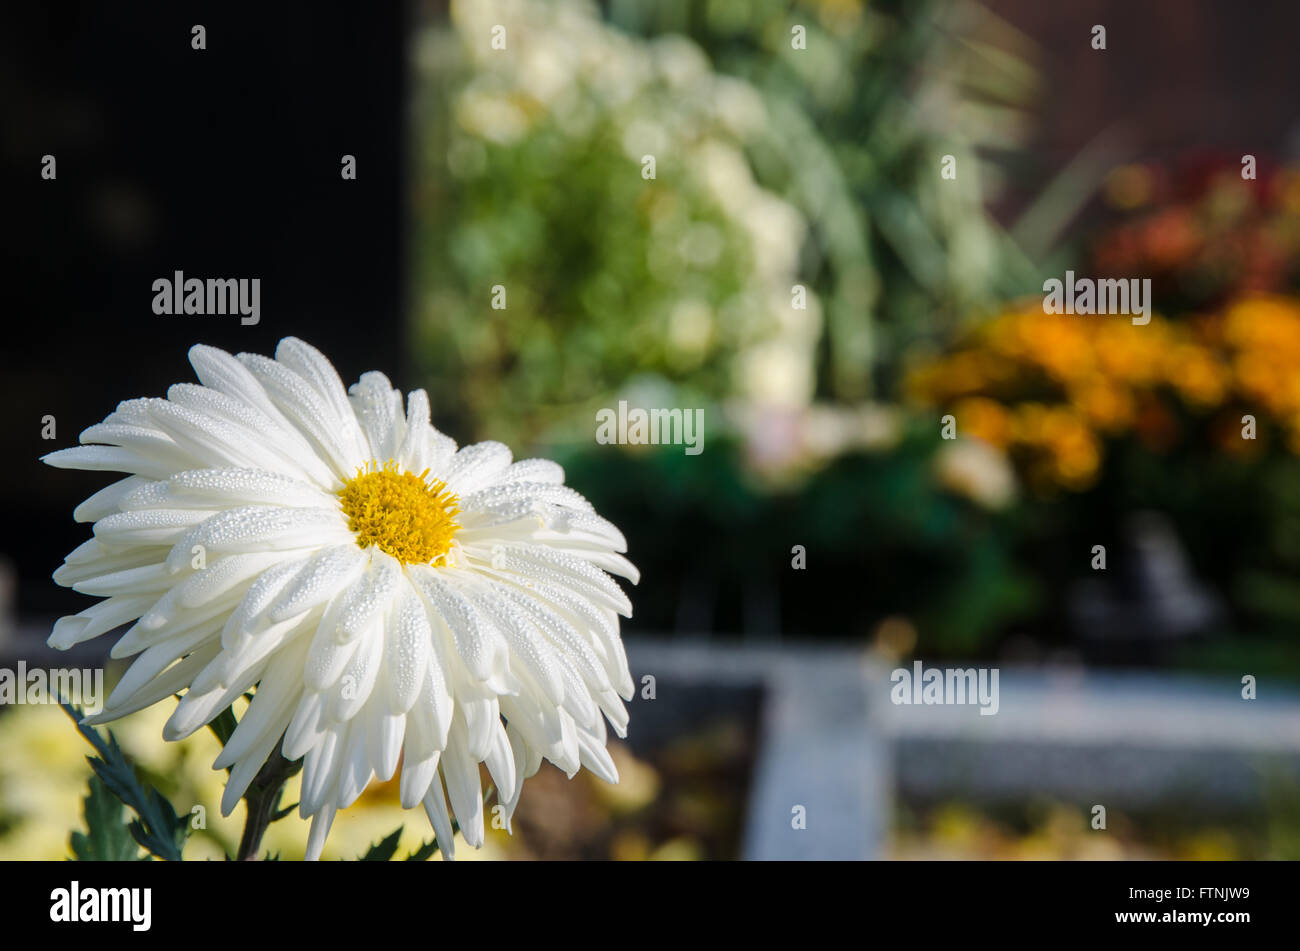 Detalle de la flor de crisantemo blanco contra cementerio concepto Foto de stock